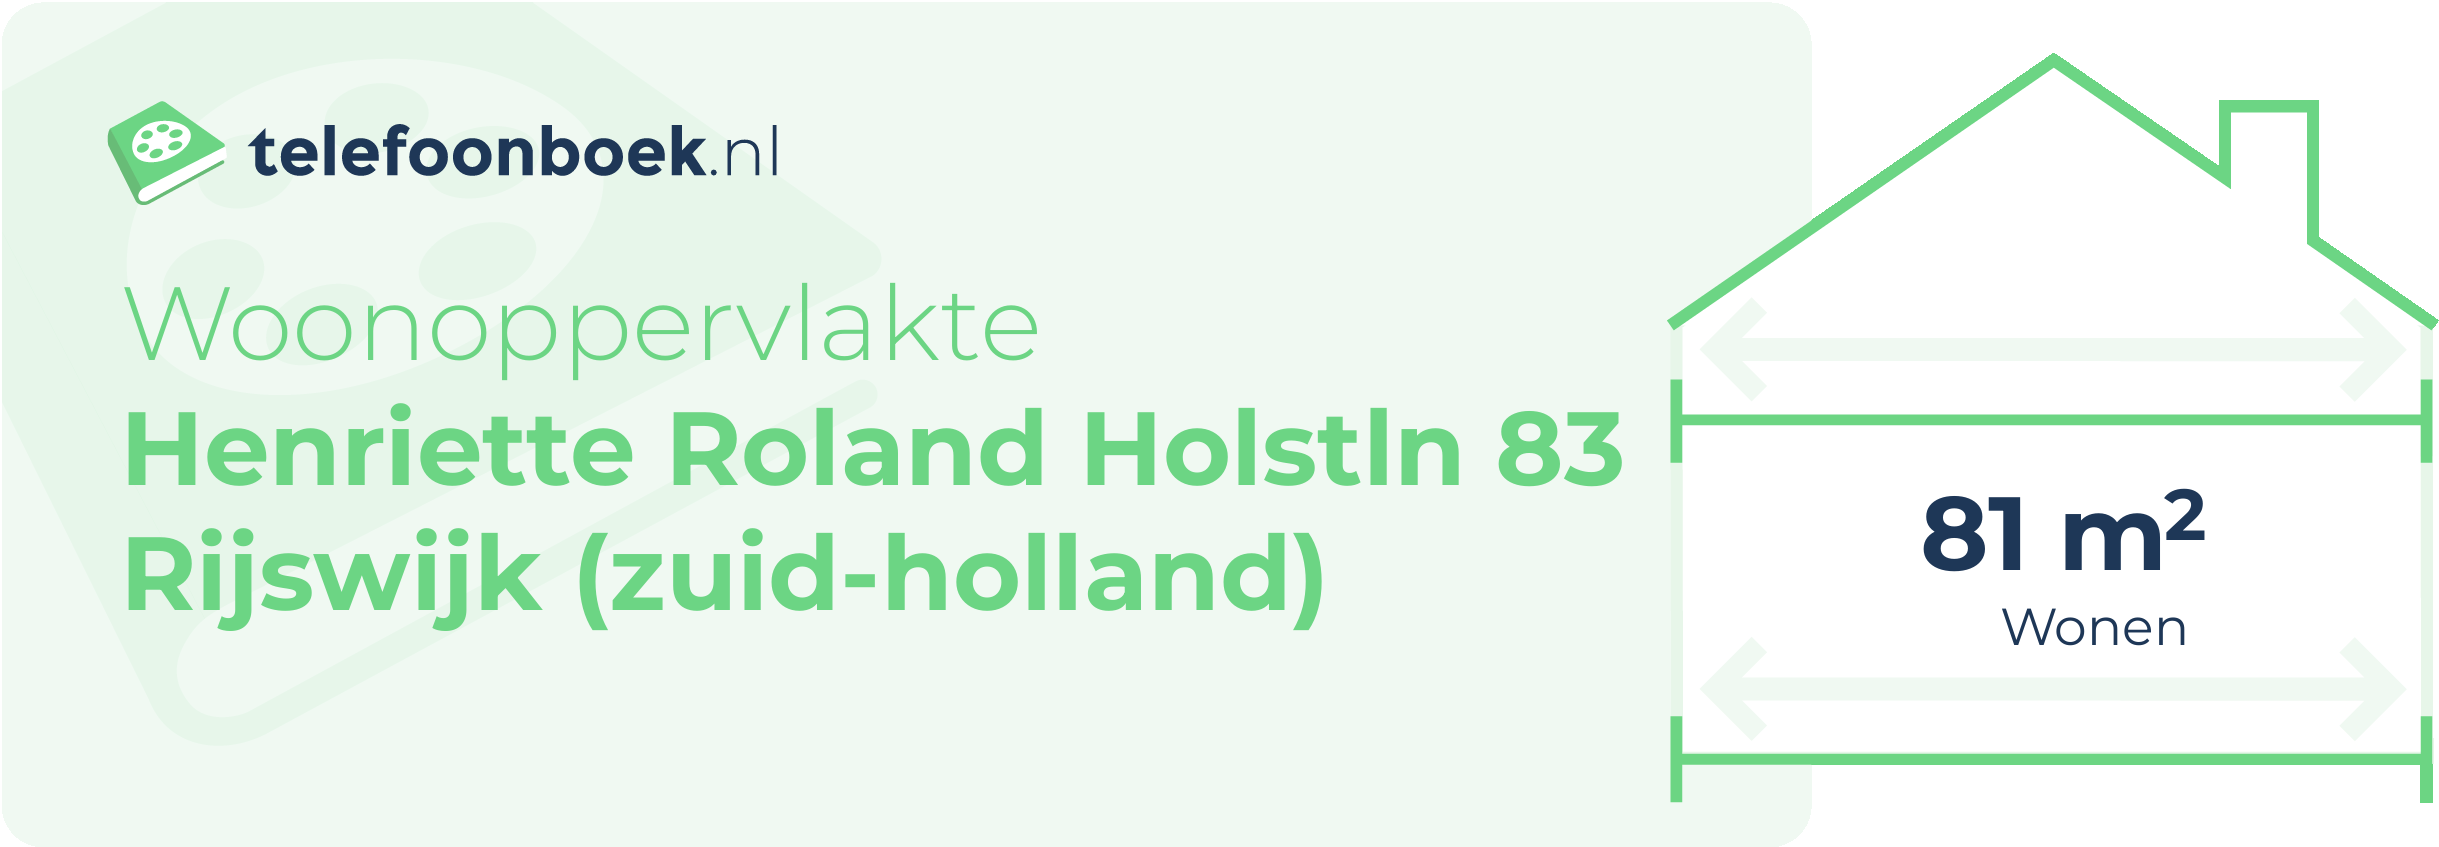 Woonoppervlakte Henriette Roland Holstln 83 Rijswijk (Zuid-Holland)